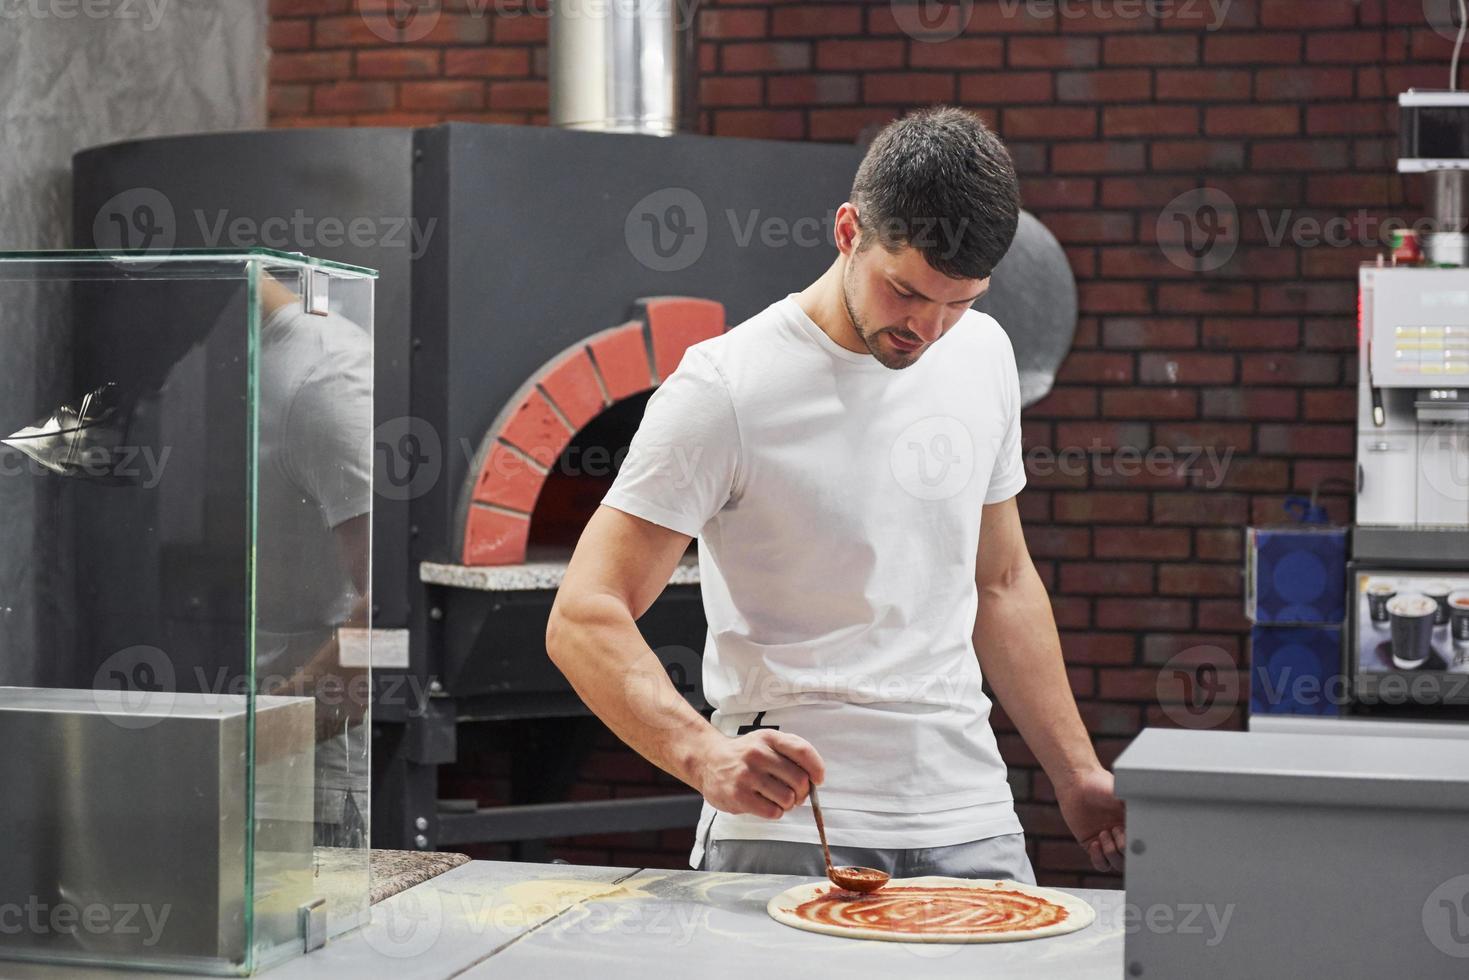 le poêle est derrière. boulanger en chemise blanche mettant de la sauce pour faire de délicieuses pizzas pour une commande au restaurant photo